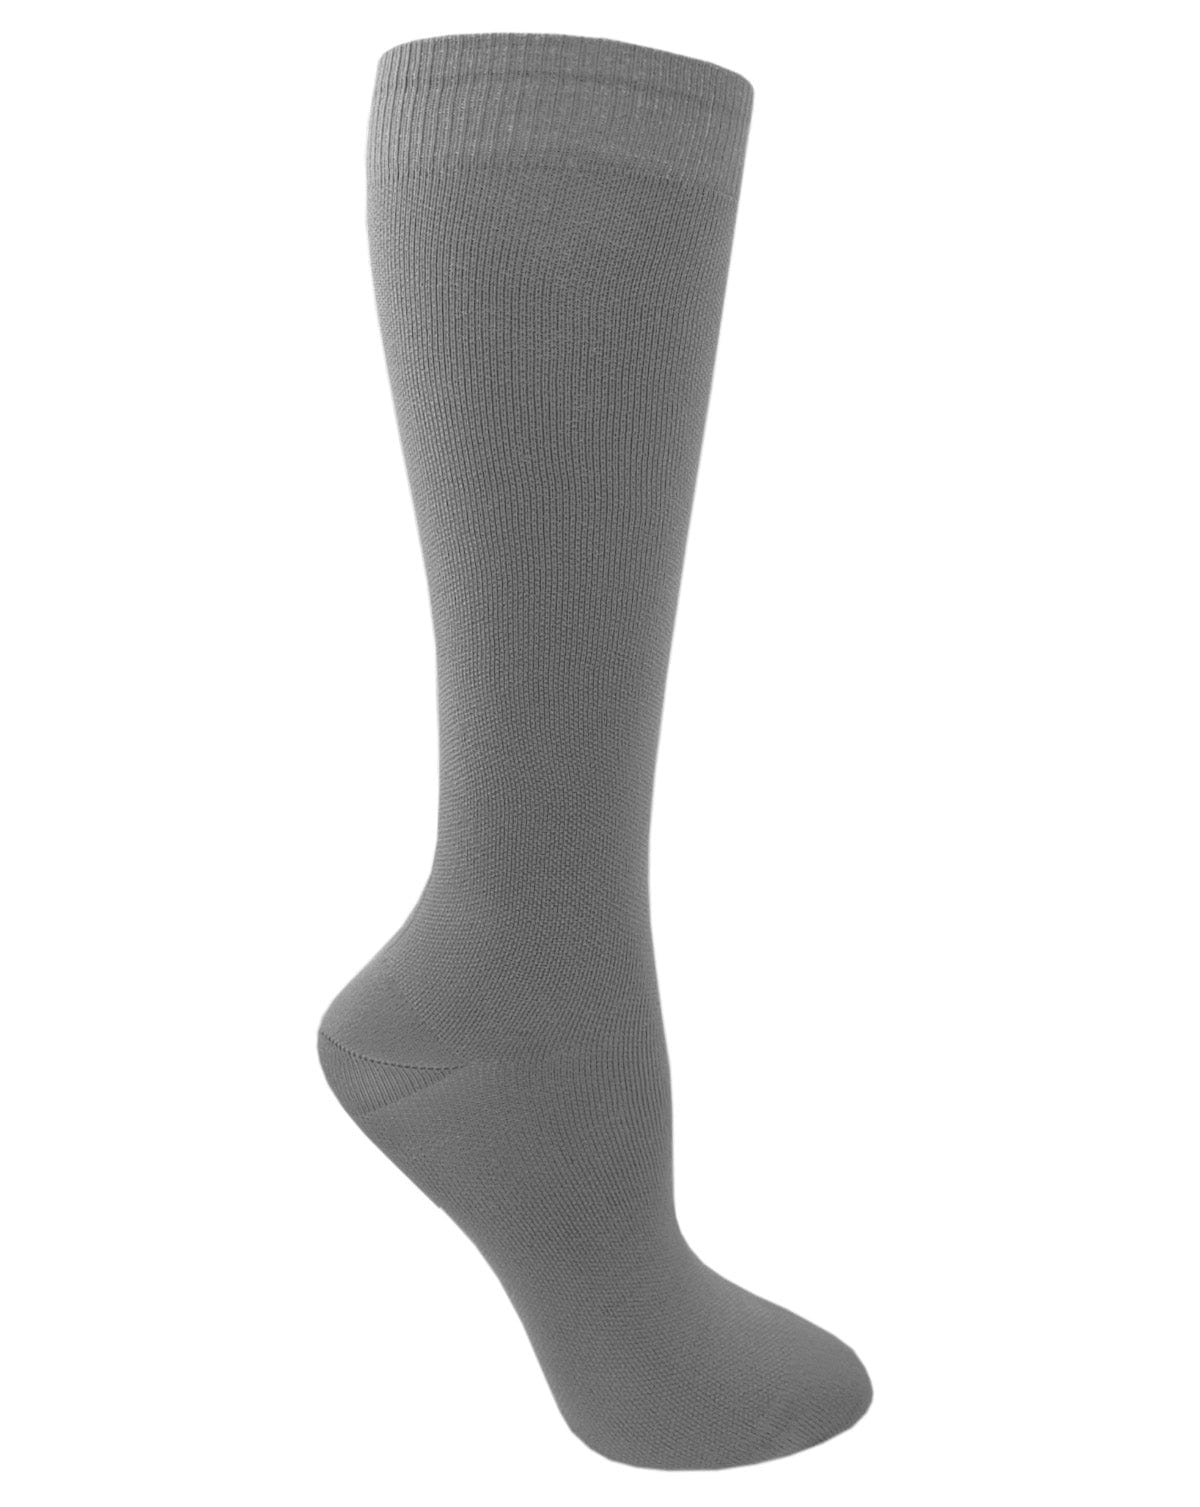 Prestige Medical Socks Pewter Prestige 30cm Premium Knit Compression Socks